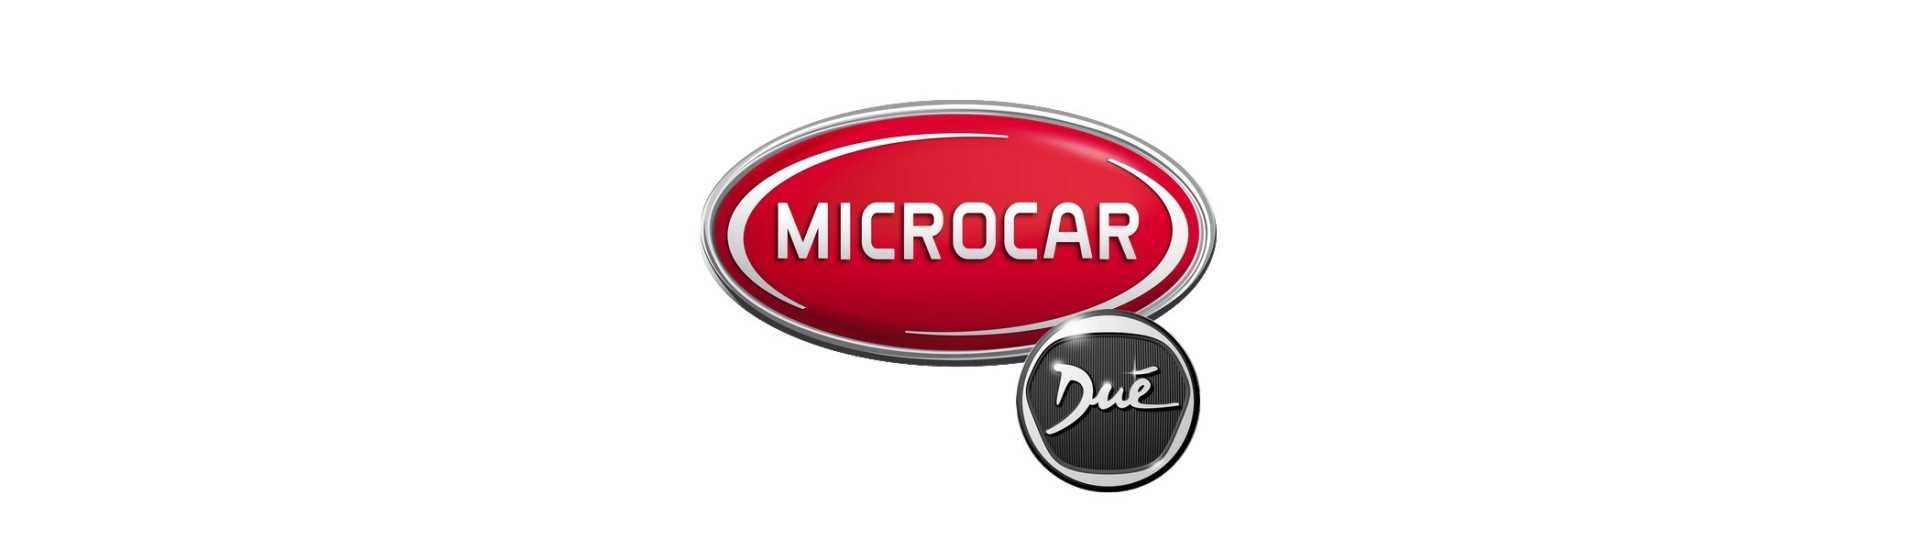 Tyst block till bästa pris för bil utan licens Microcar Dué